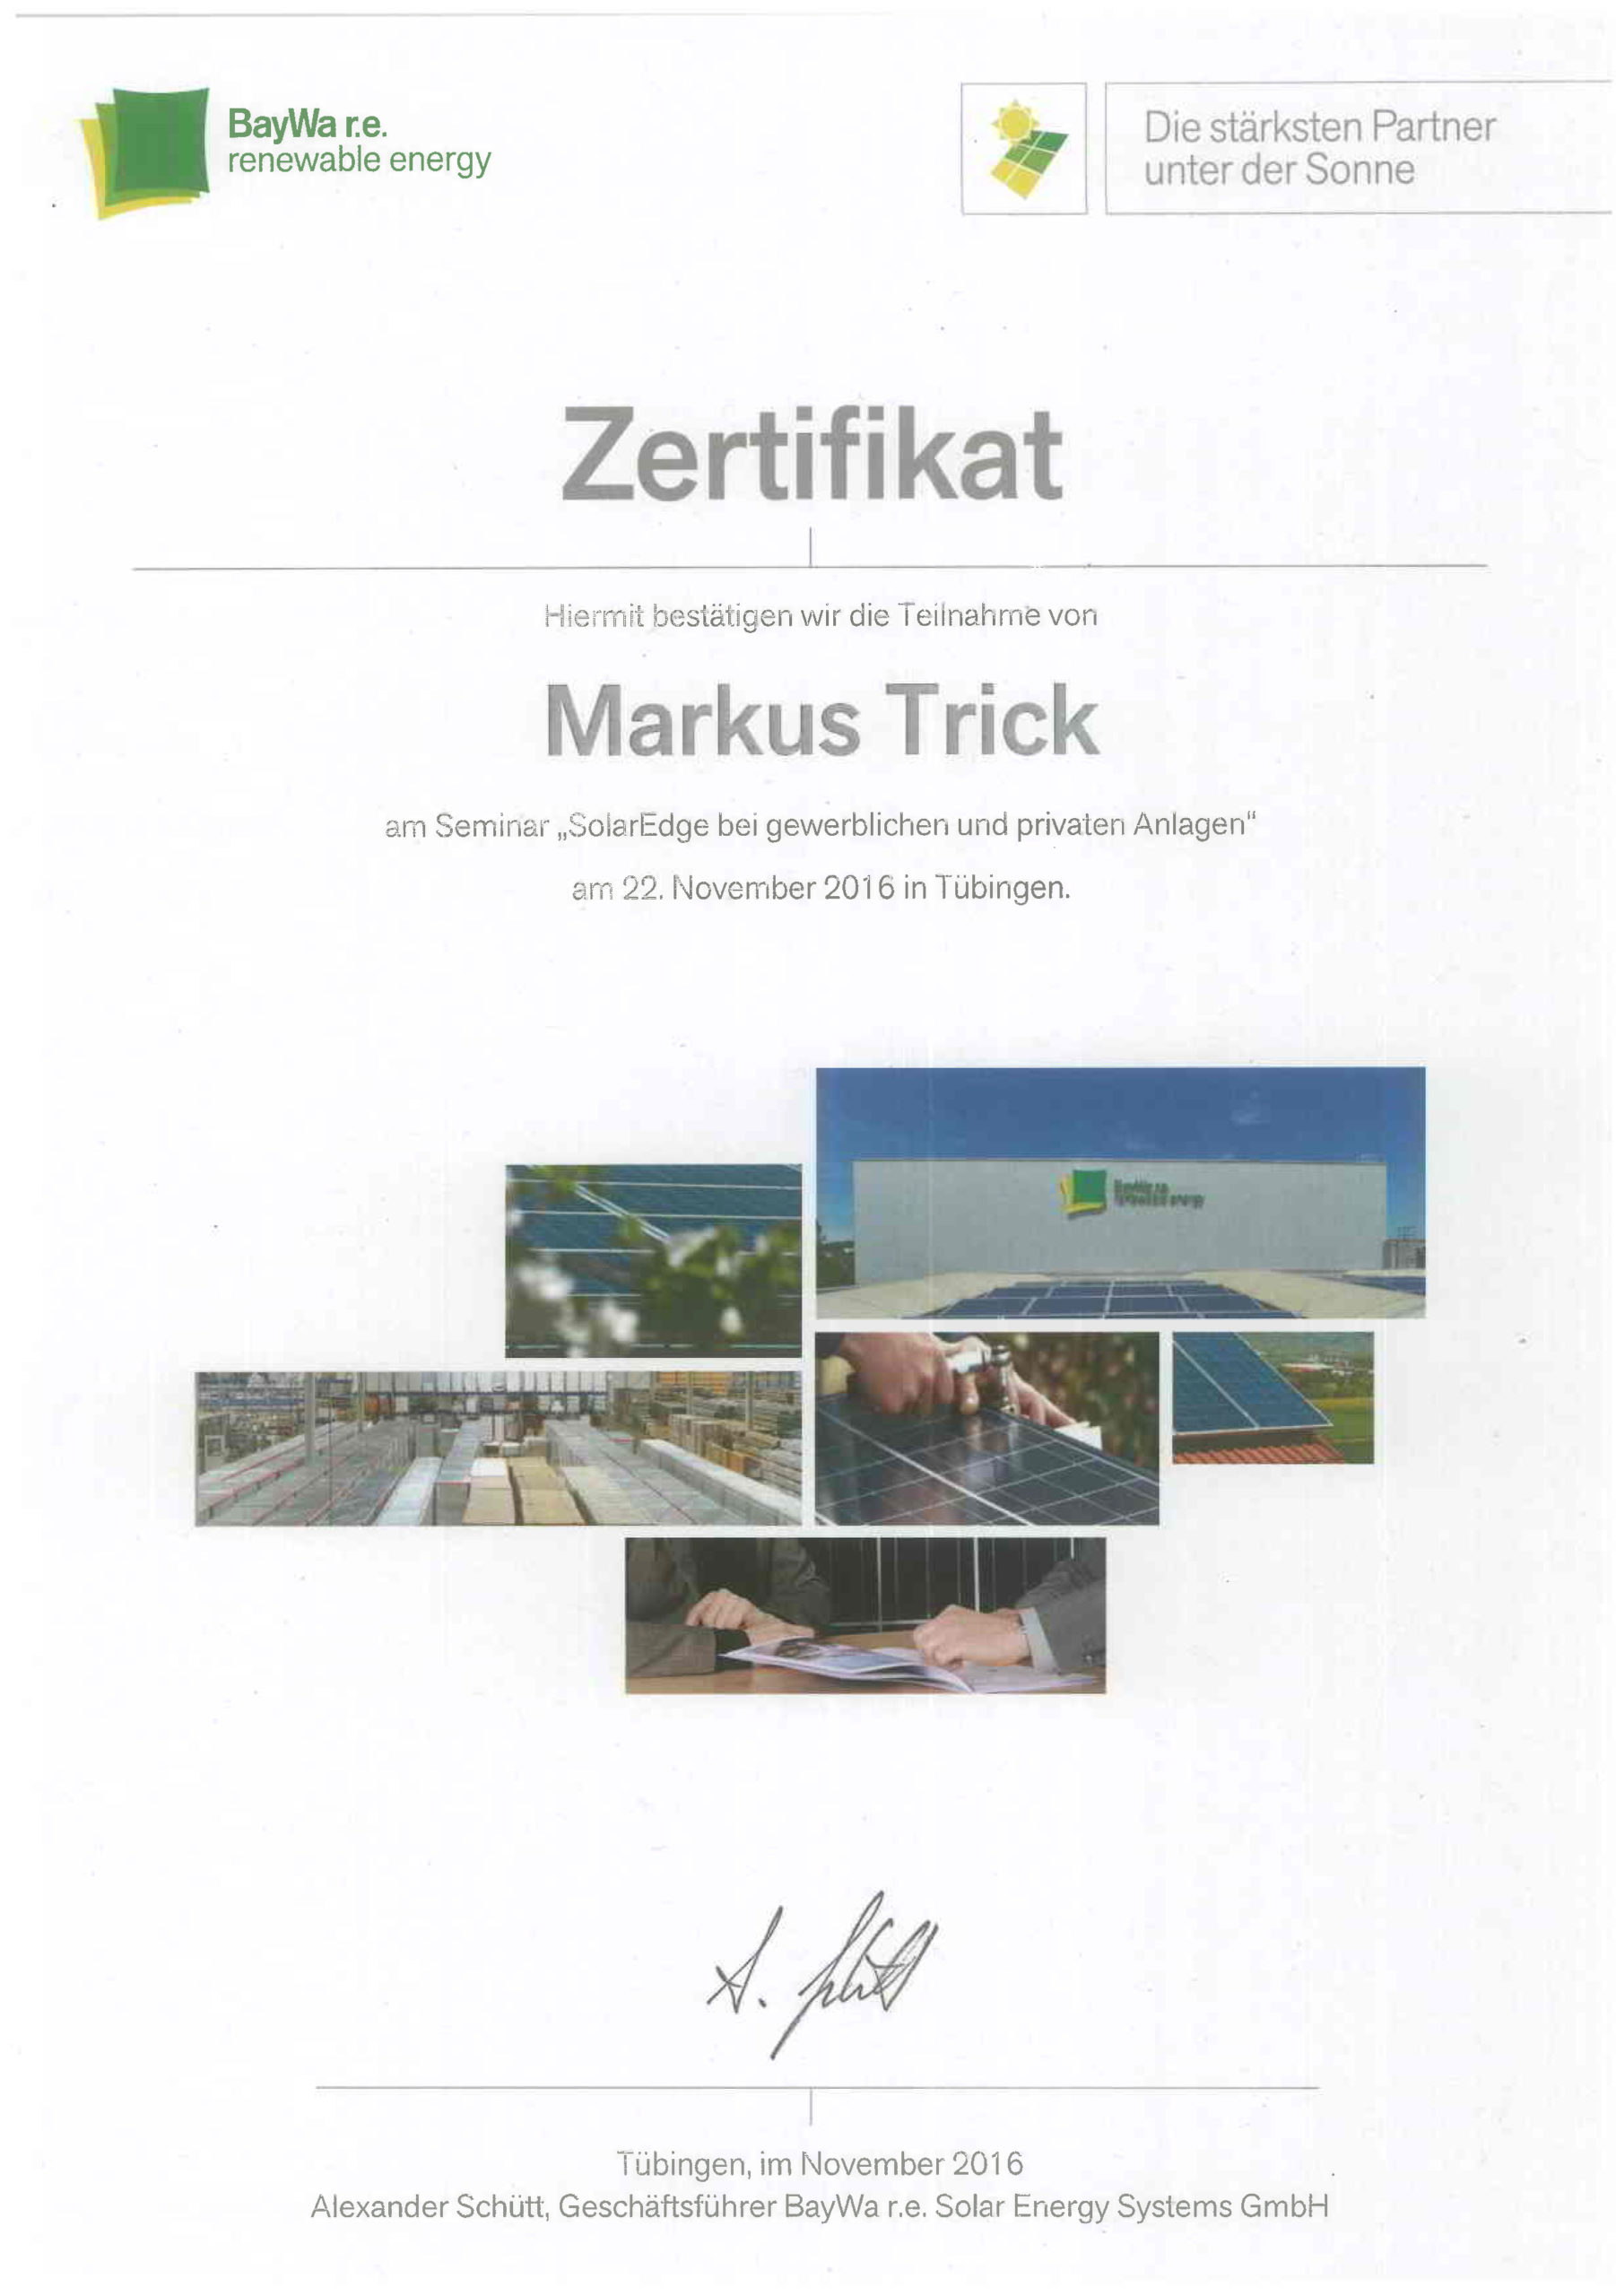 Zertifikat - SolarEdge bei gewerblichen und privaten Photovoltaikanlagen - Markus Trick